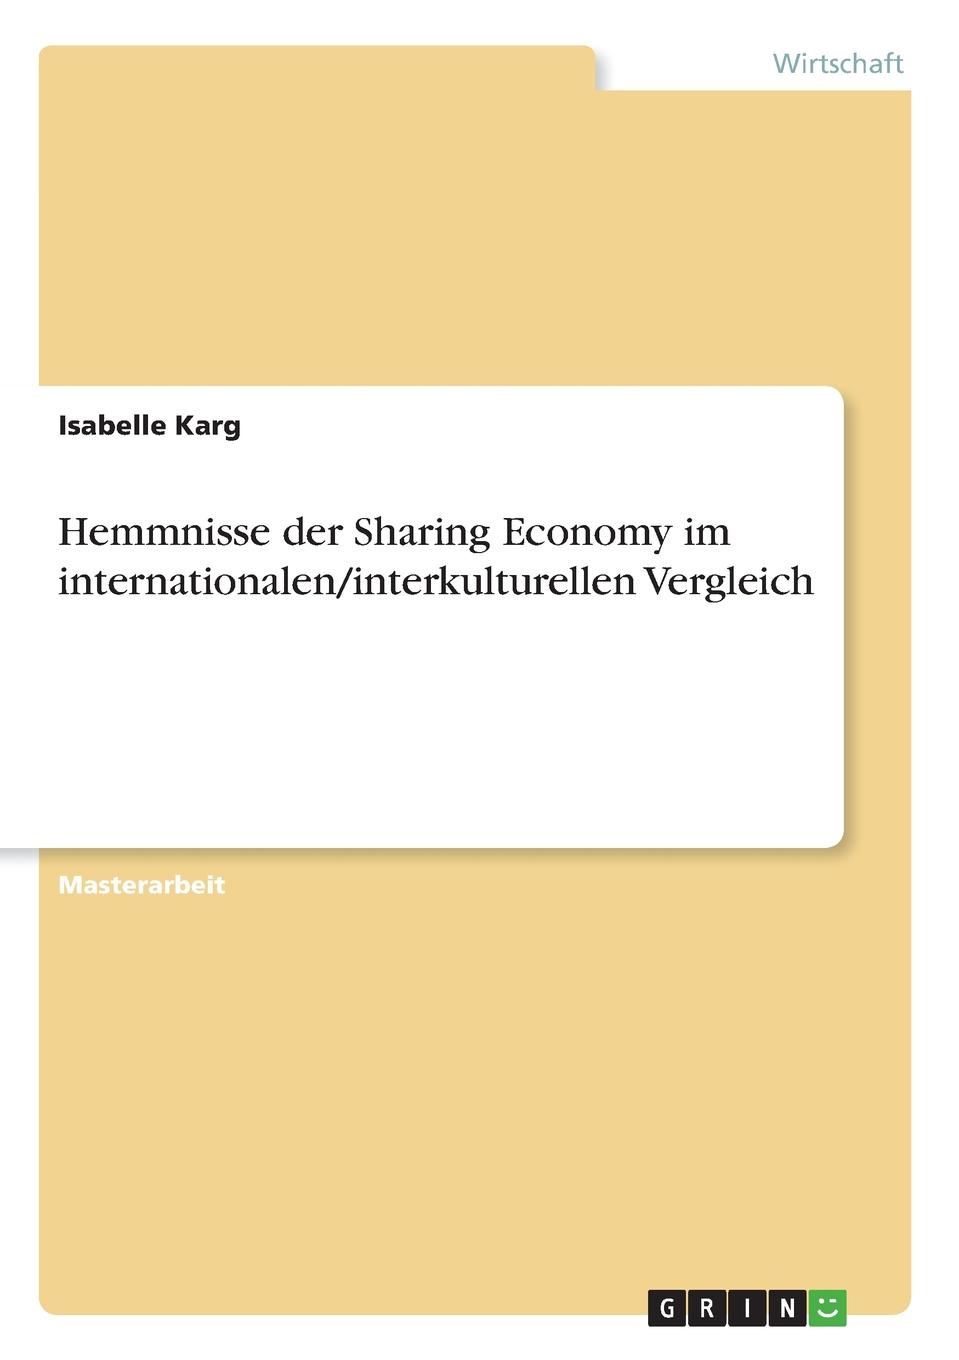 фото Hemmnisse der Sharing Economy im internationalen/interkulturellen Vergleich